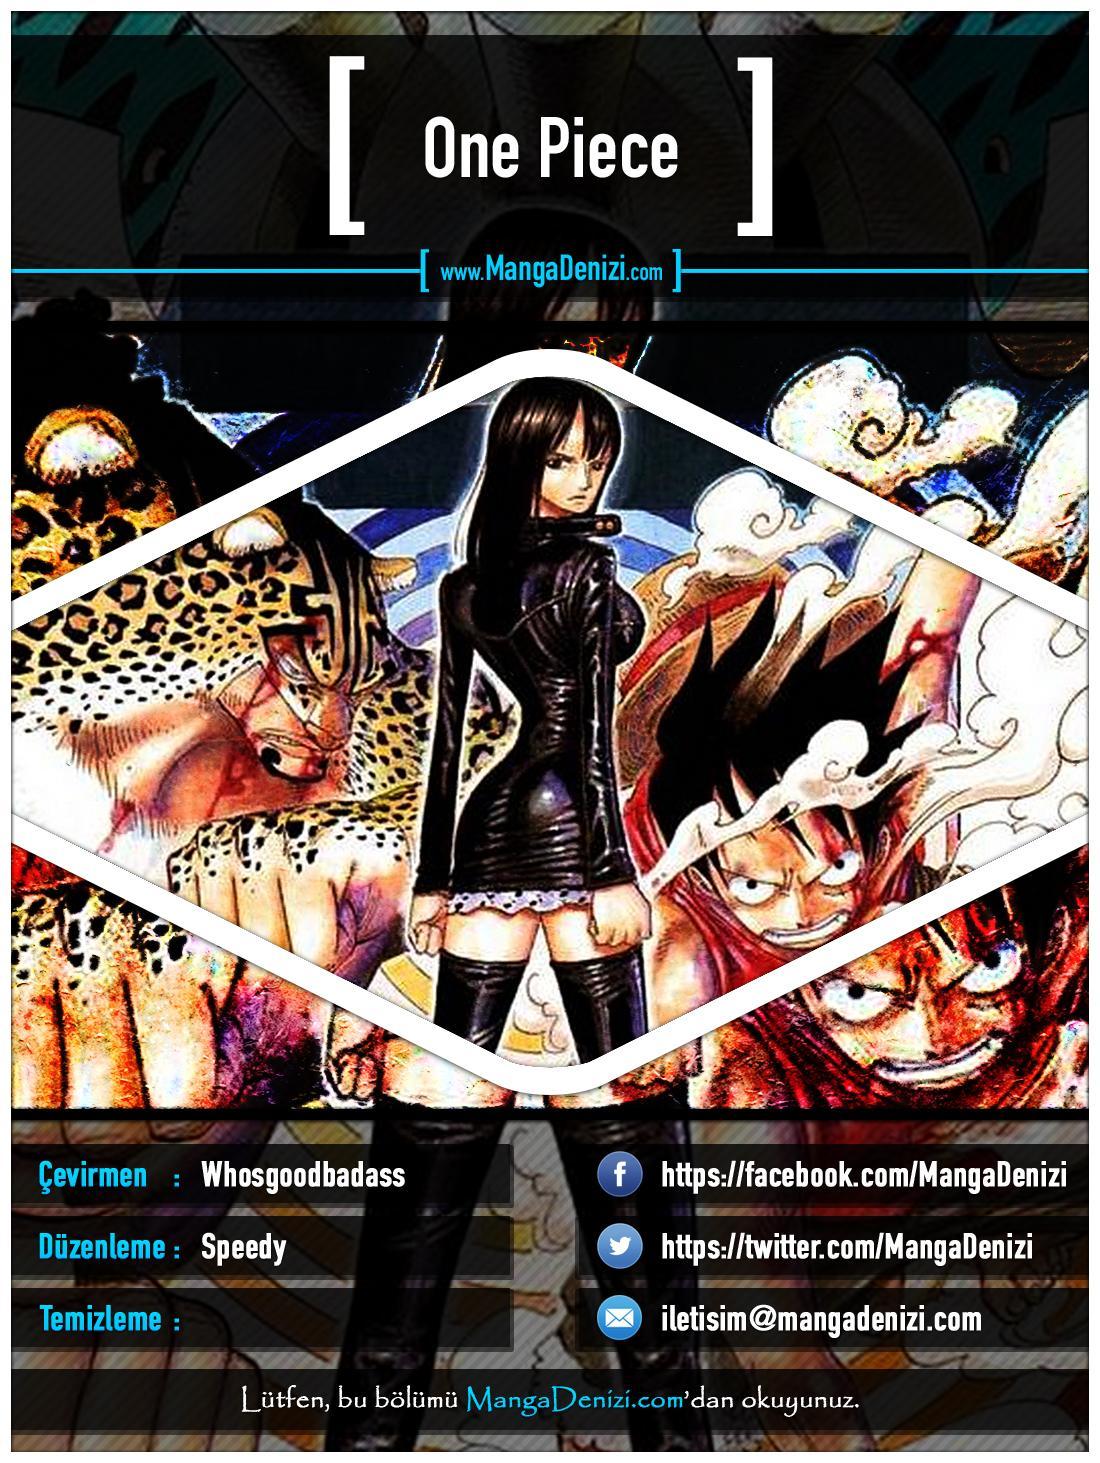 One Piece [Renkli] mangasının 0370 bölümünün 1. sayfasını okuyorsunuz.